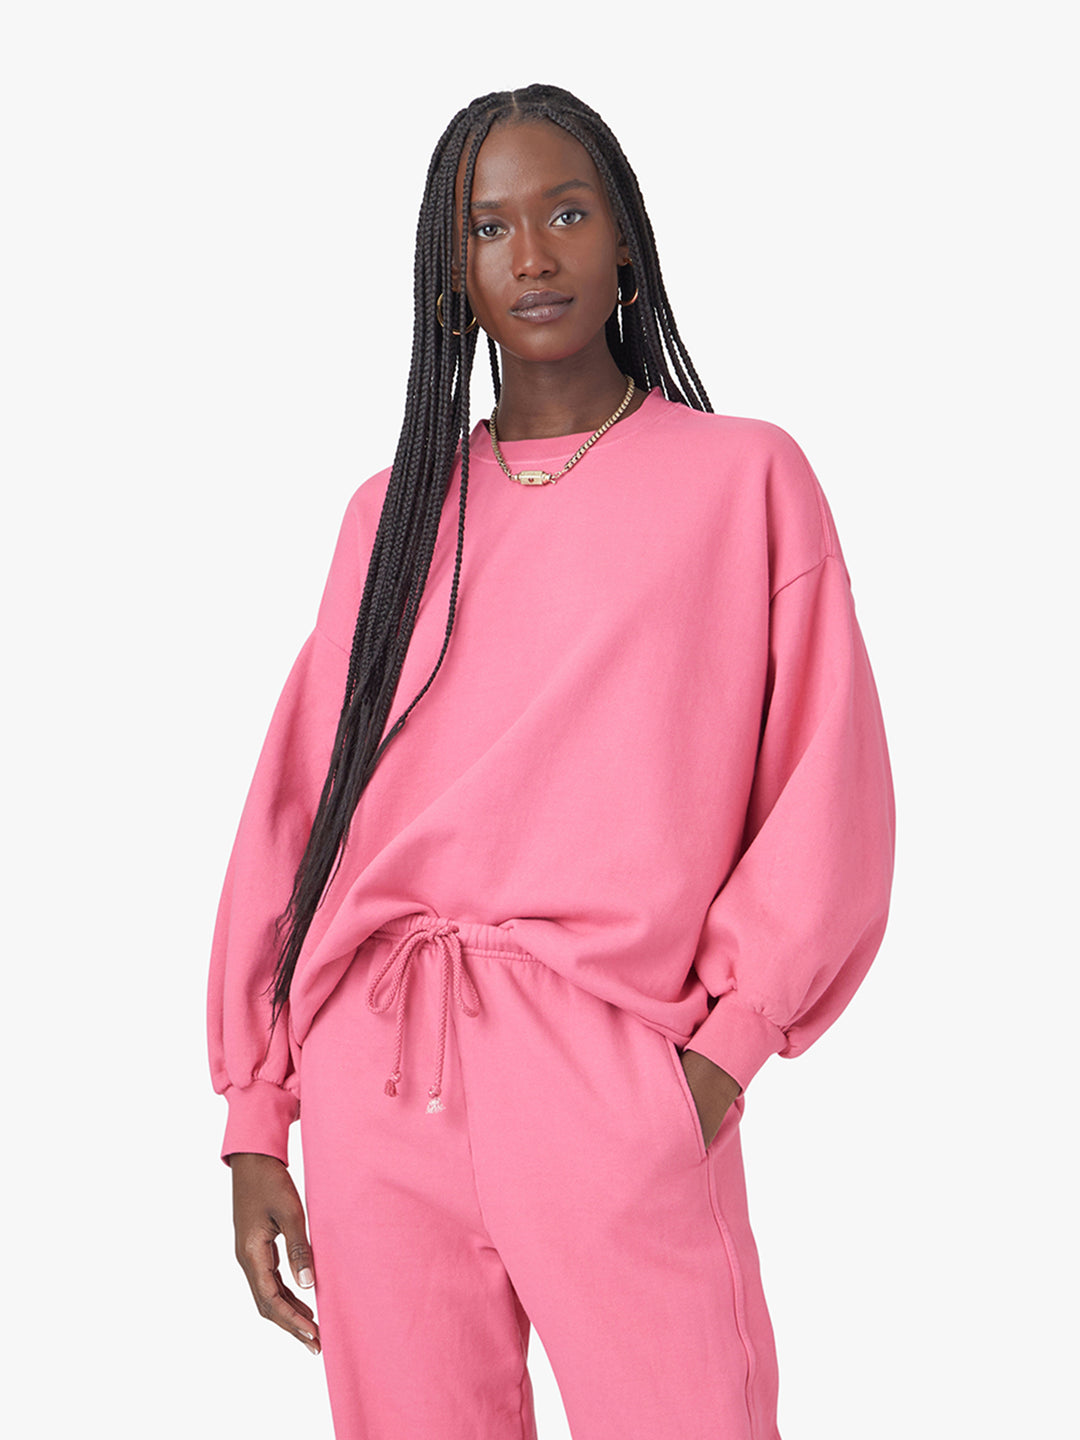 Xirena - Eaden Sweatshirt in Fiesta Pink